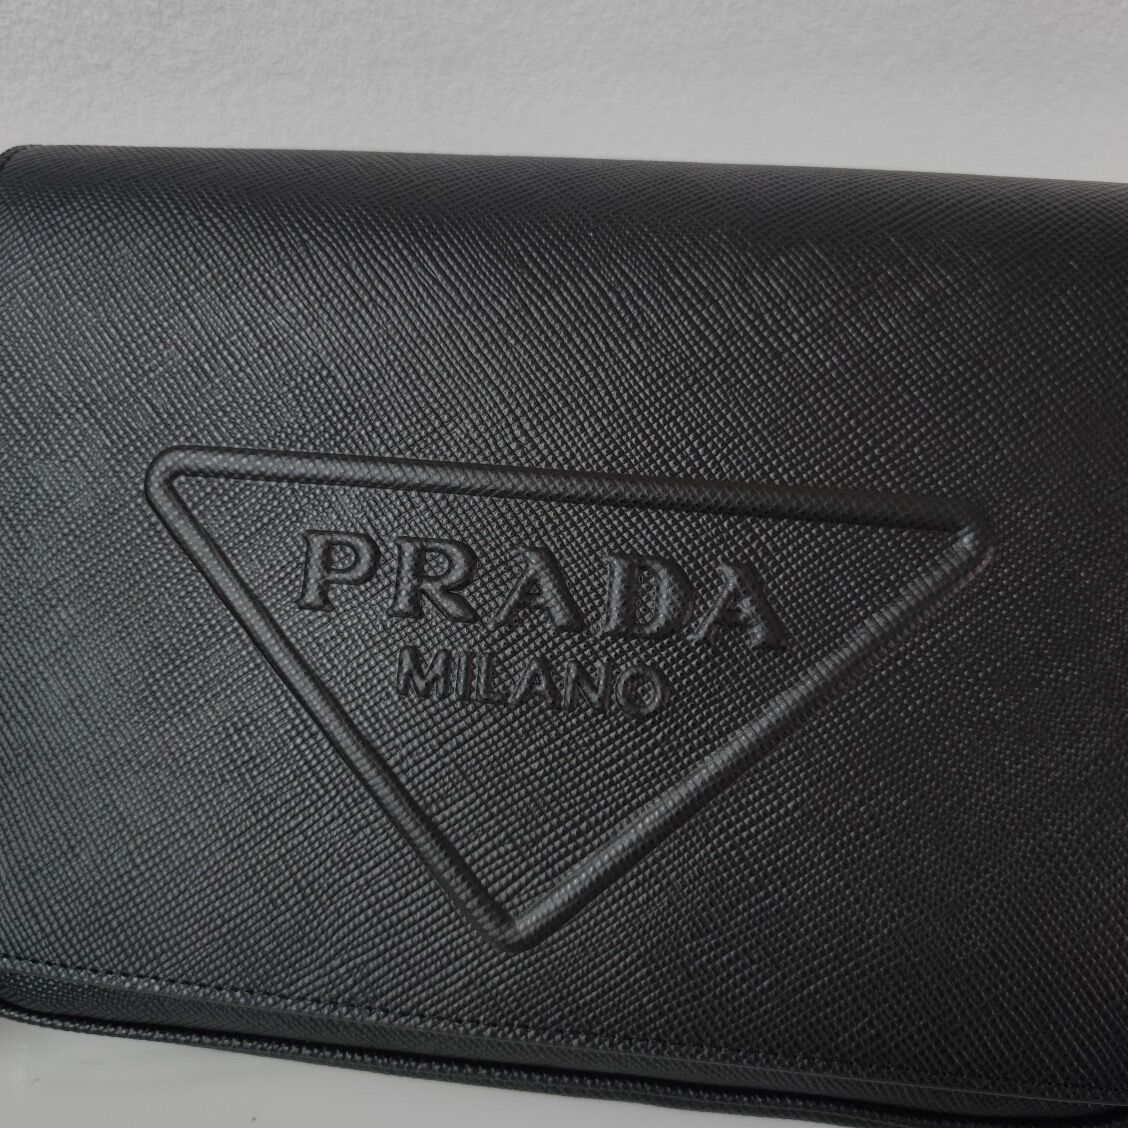 Prada Leather bag with shoulder strap 2BV031 black